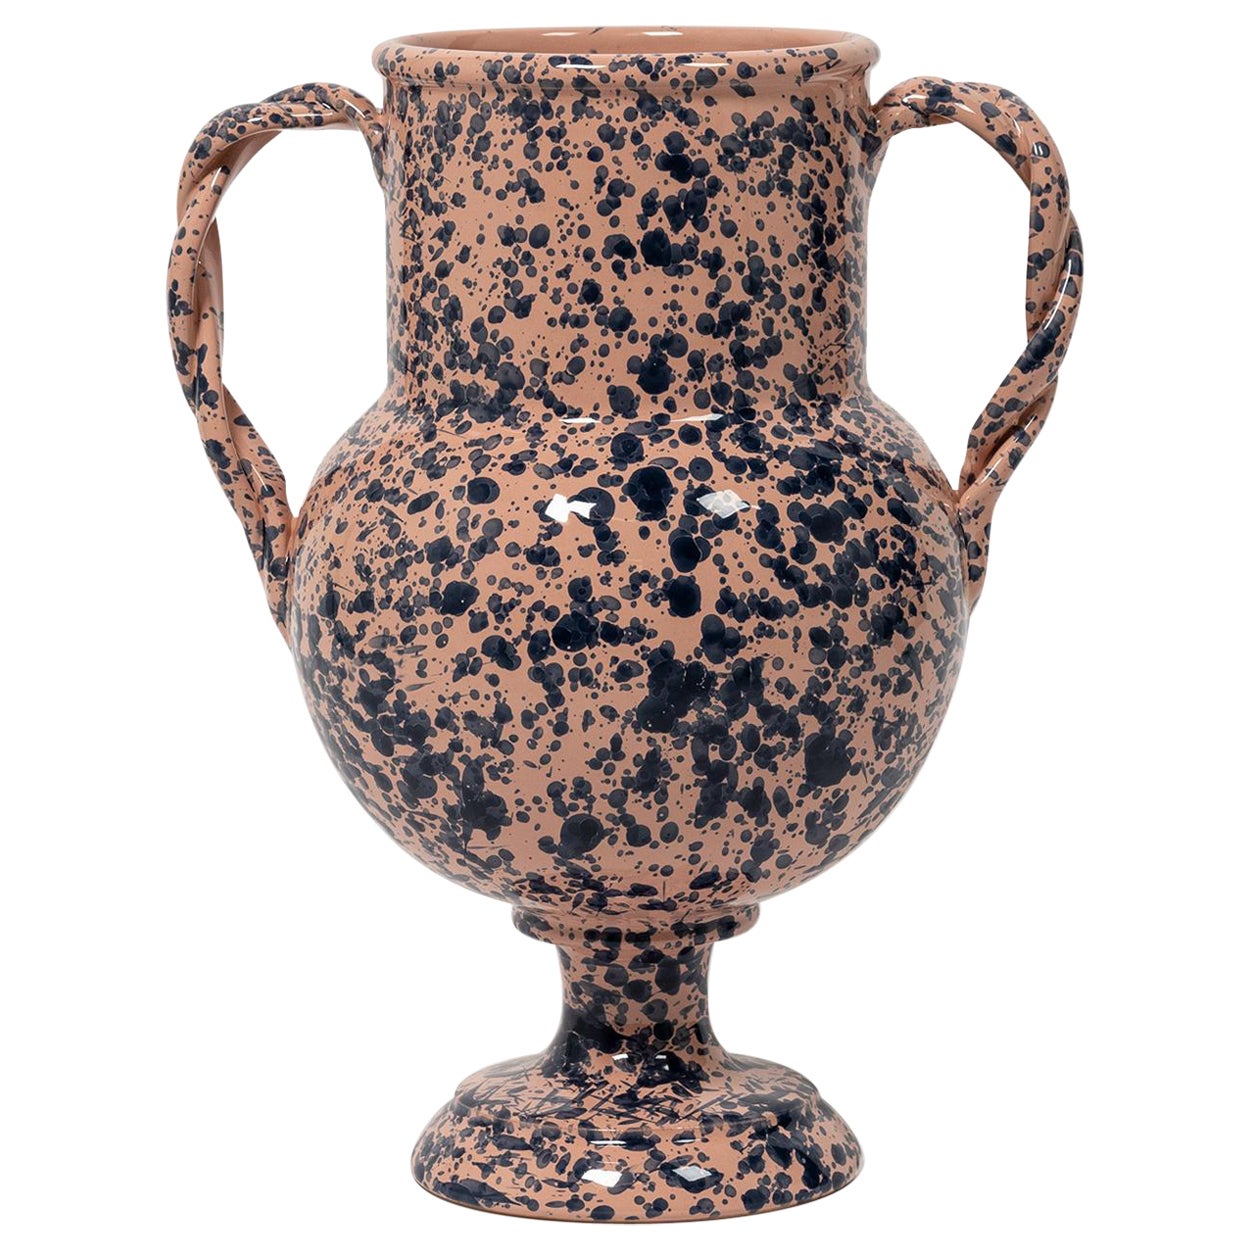 Splatter-Vase, Keramik, graue Urne inspiriert, groß, rosa und blau